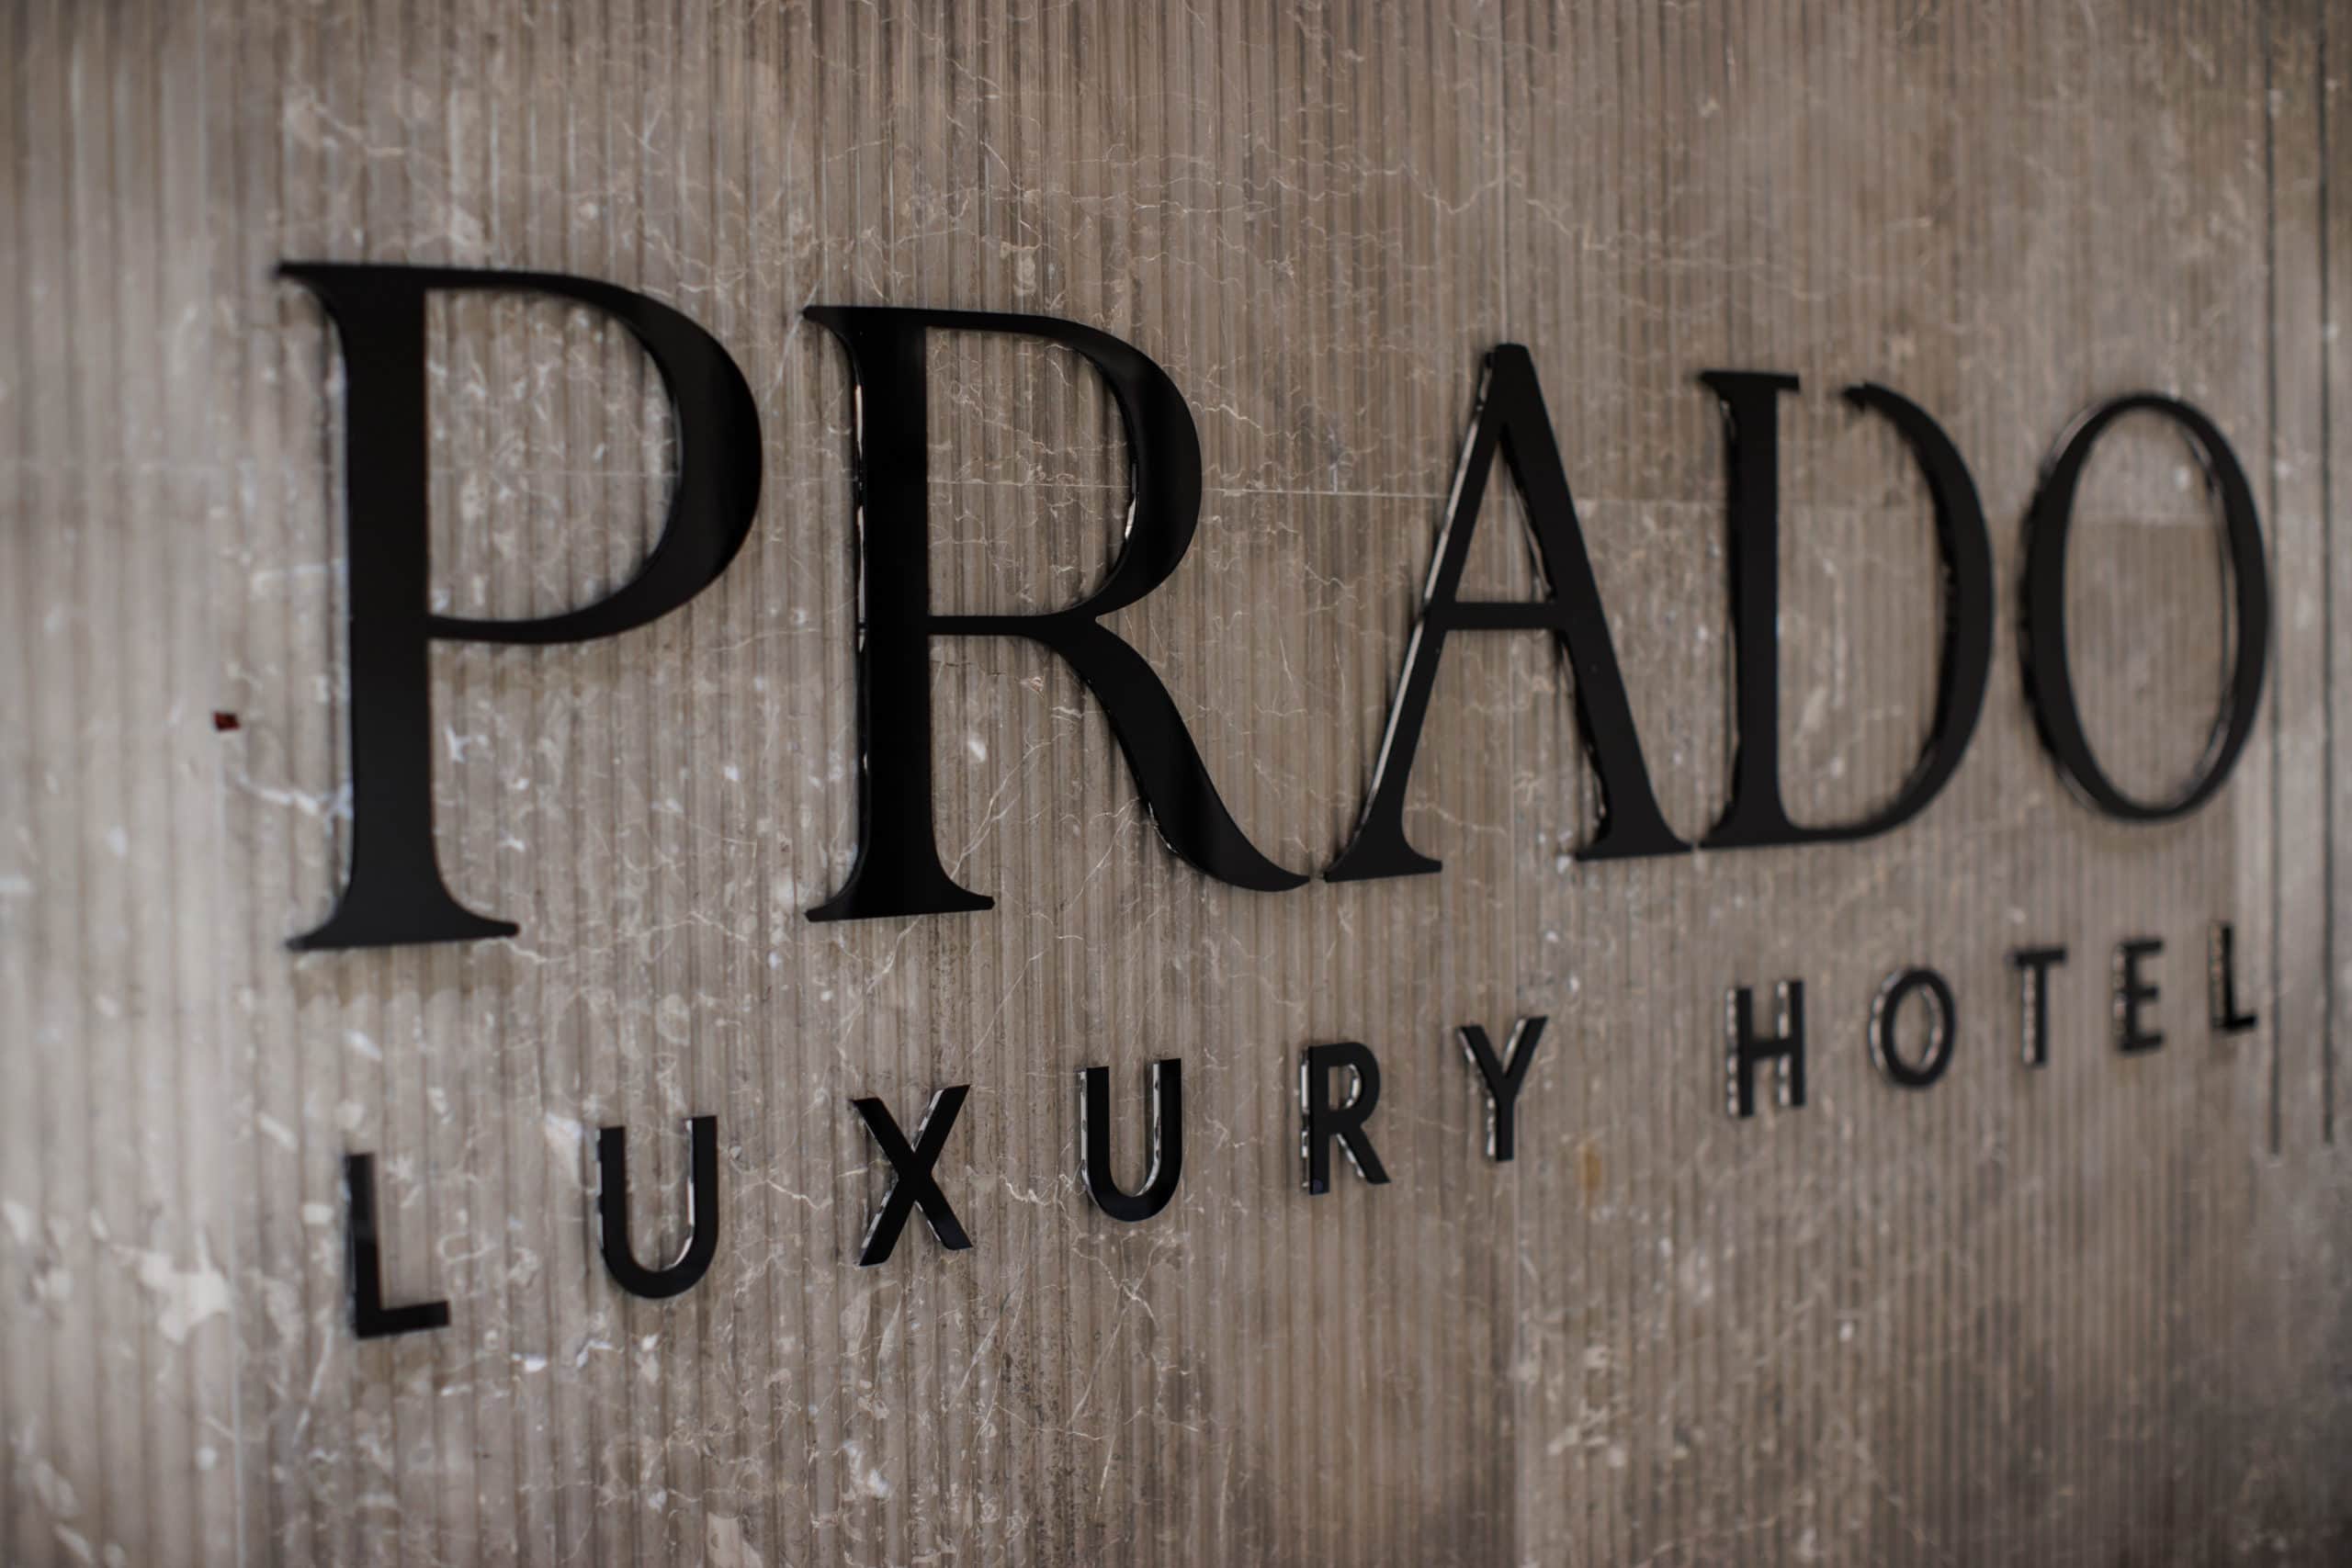 prado_luxury_hotel_wall_logo